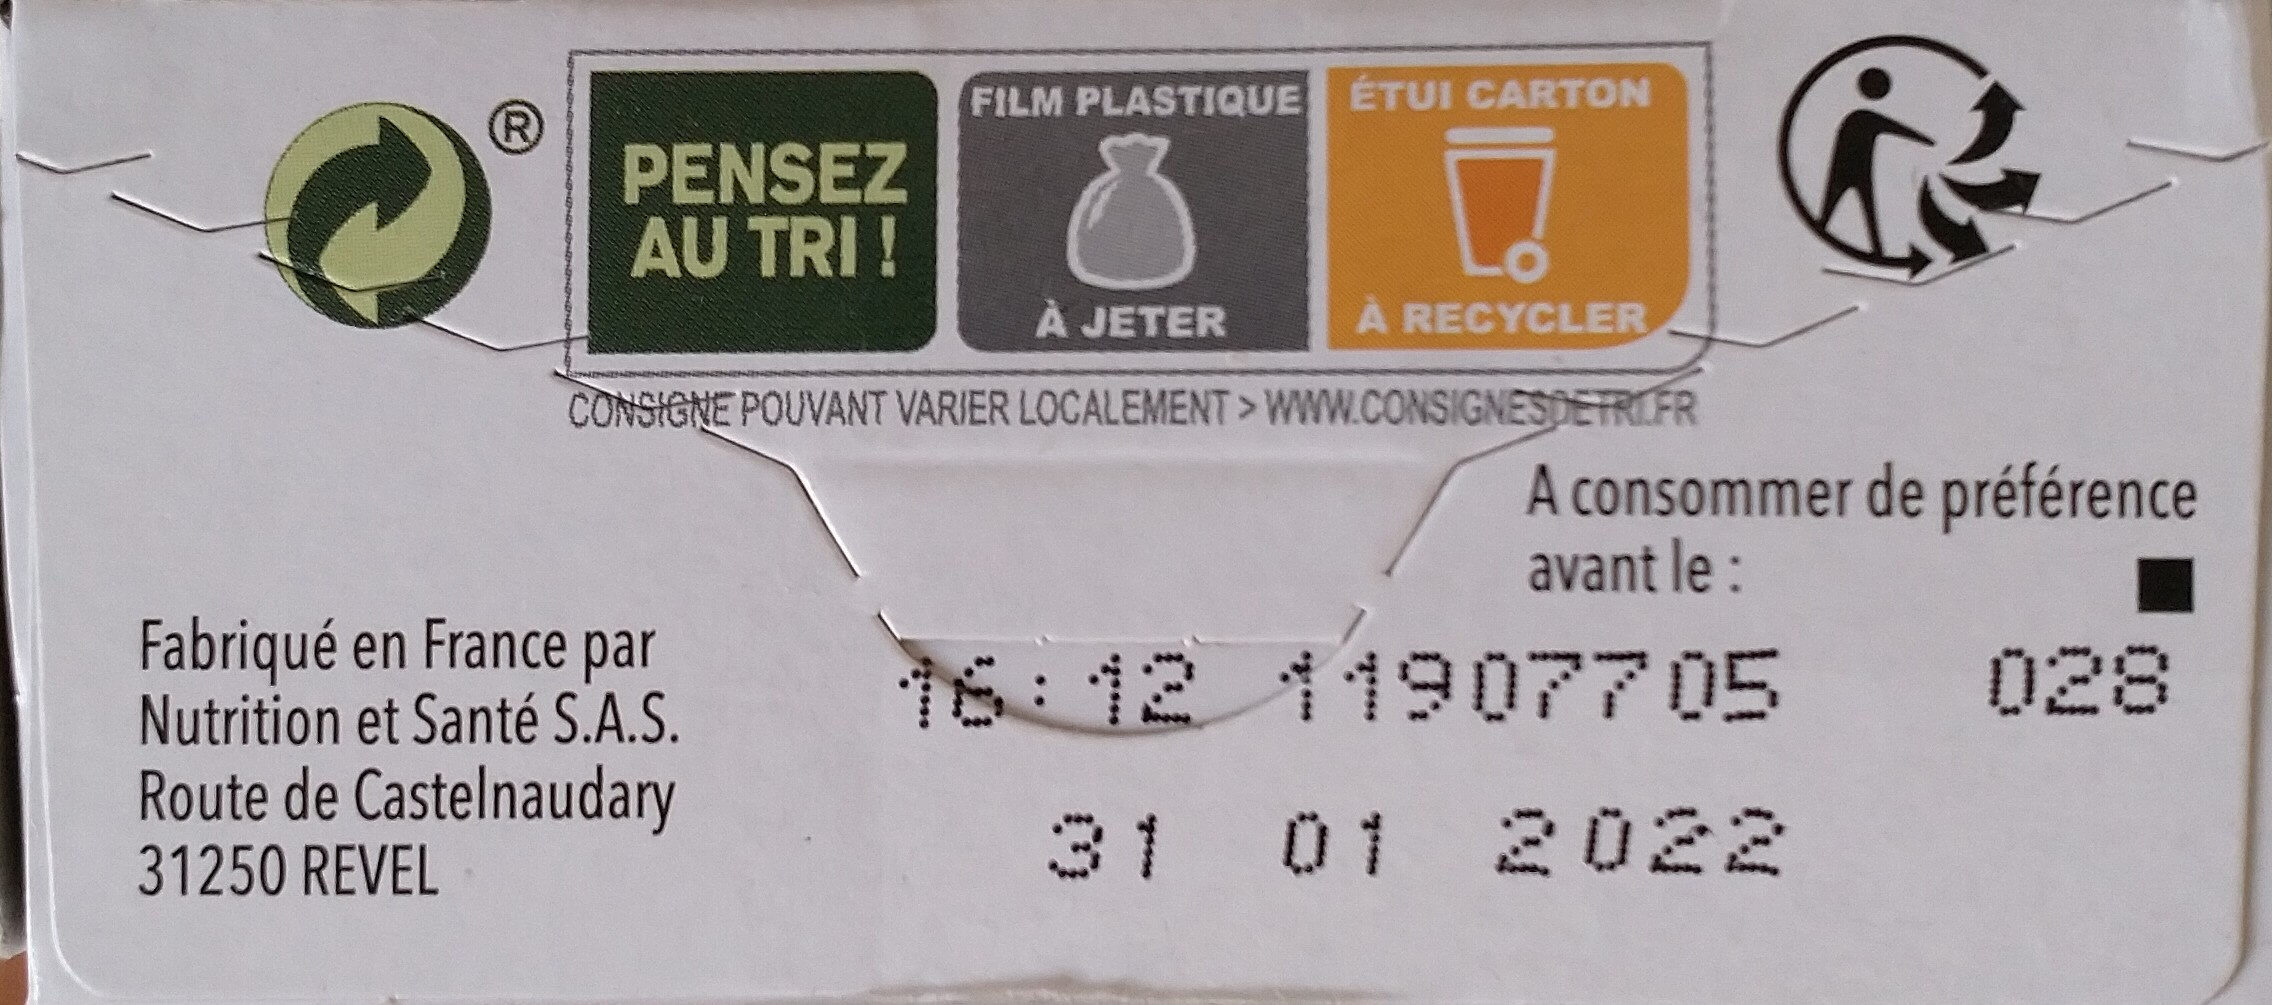 Biscuits Figue et son - Istruzioni per il riciclaggio e/o informazioni sull'imballaggio - fr